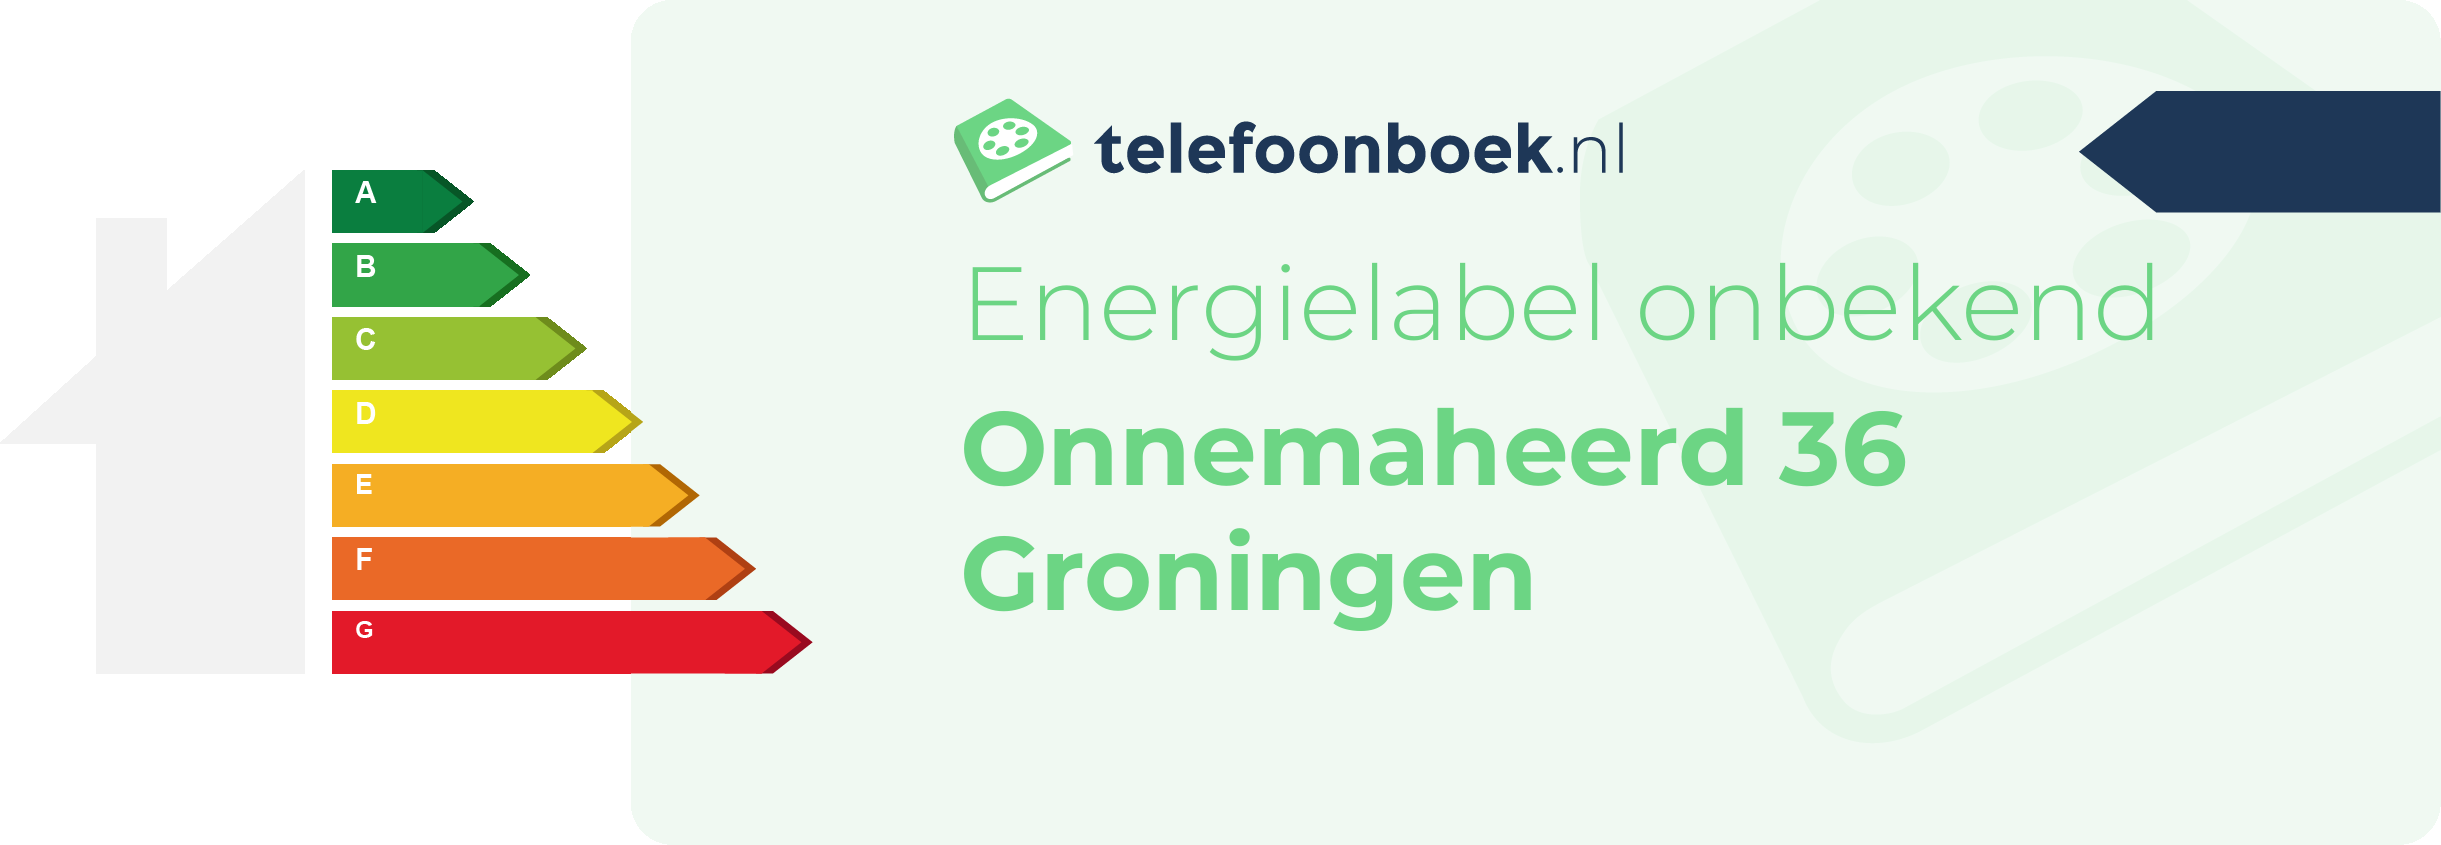 Energielabel Onnemaheerd 36 Groningen